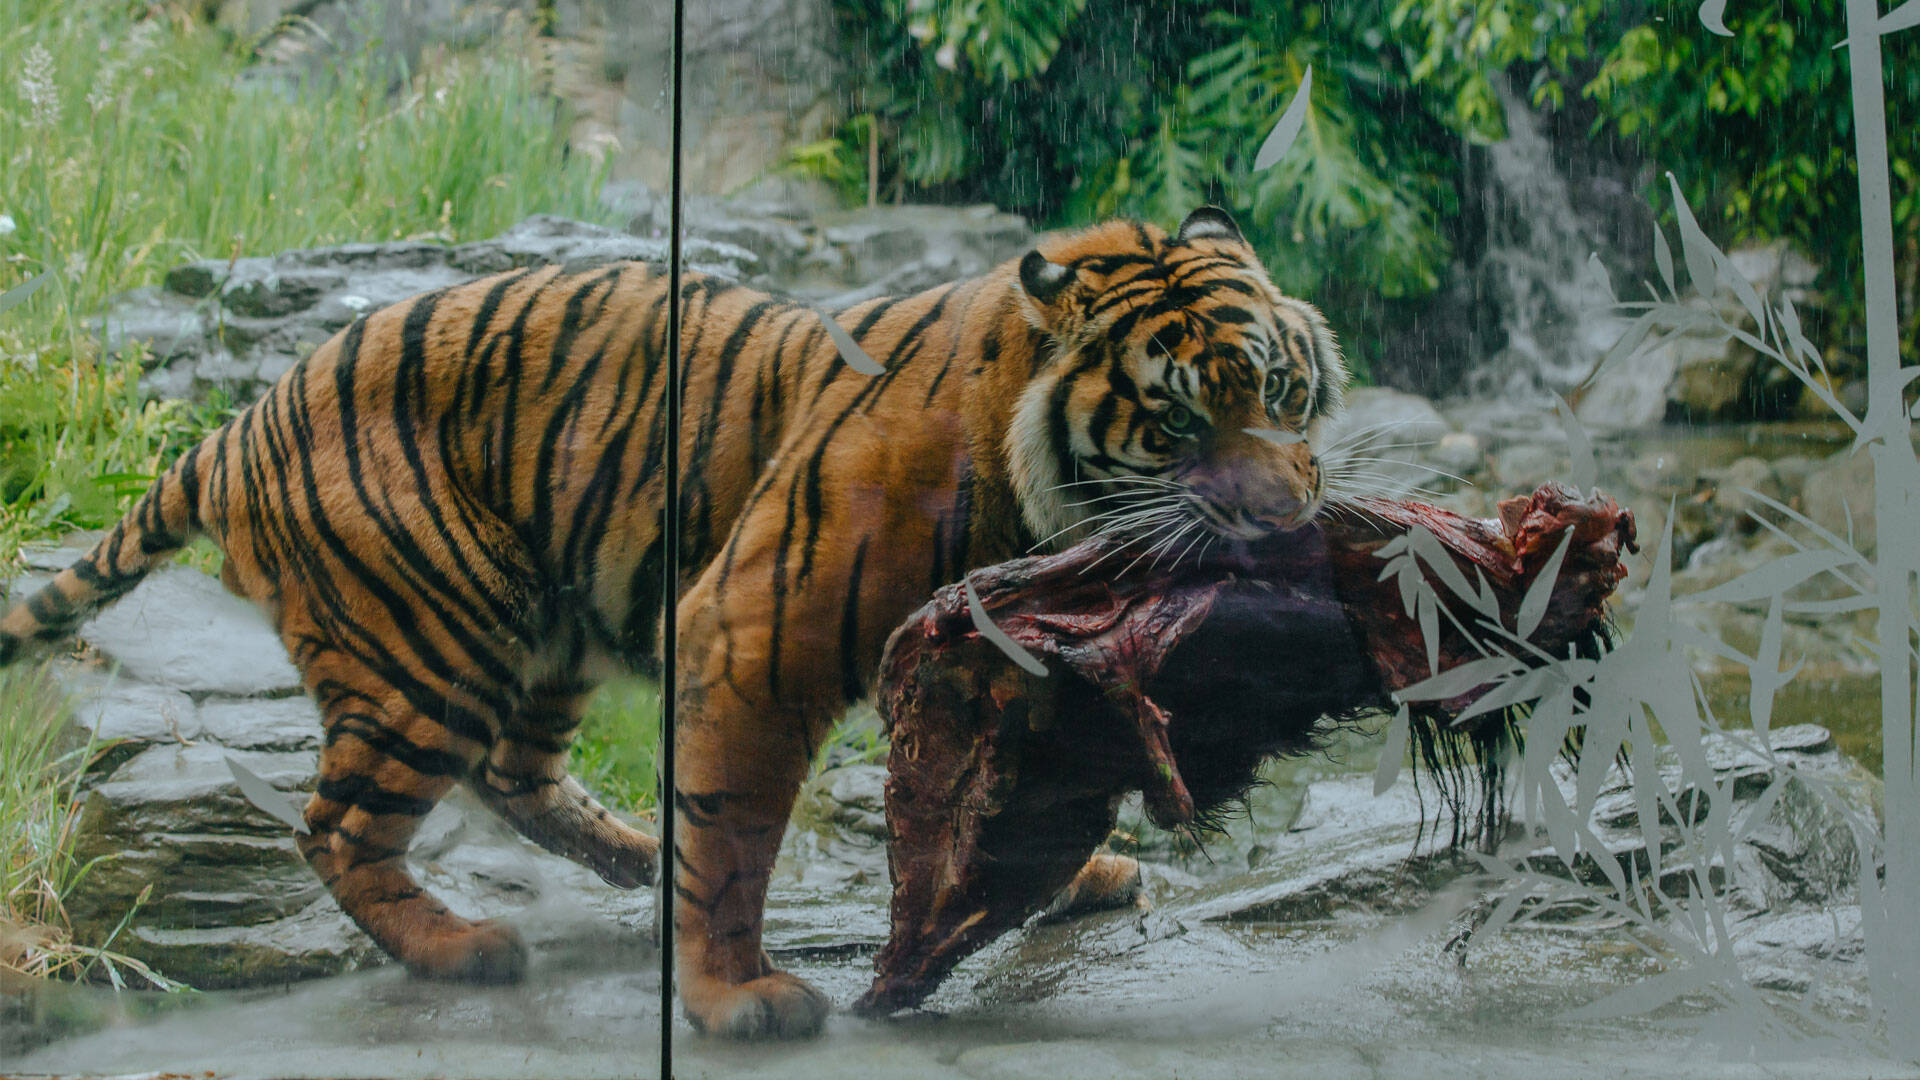 https://cdn.aucklandunlimited.com/zoo/assets/media/tiger-carcass-feeding-gallery-1.jpg